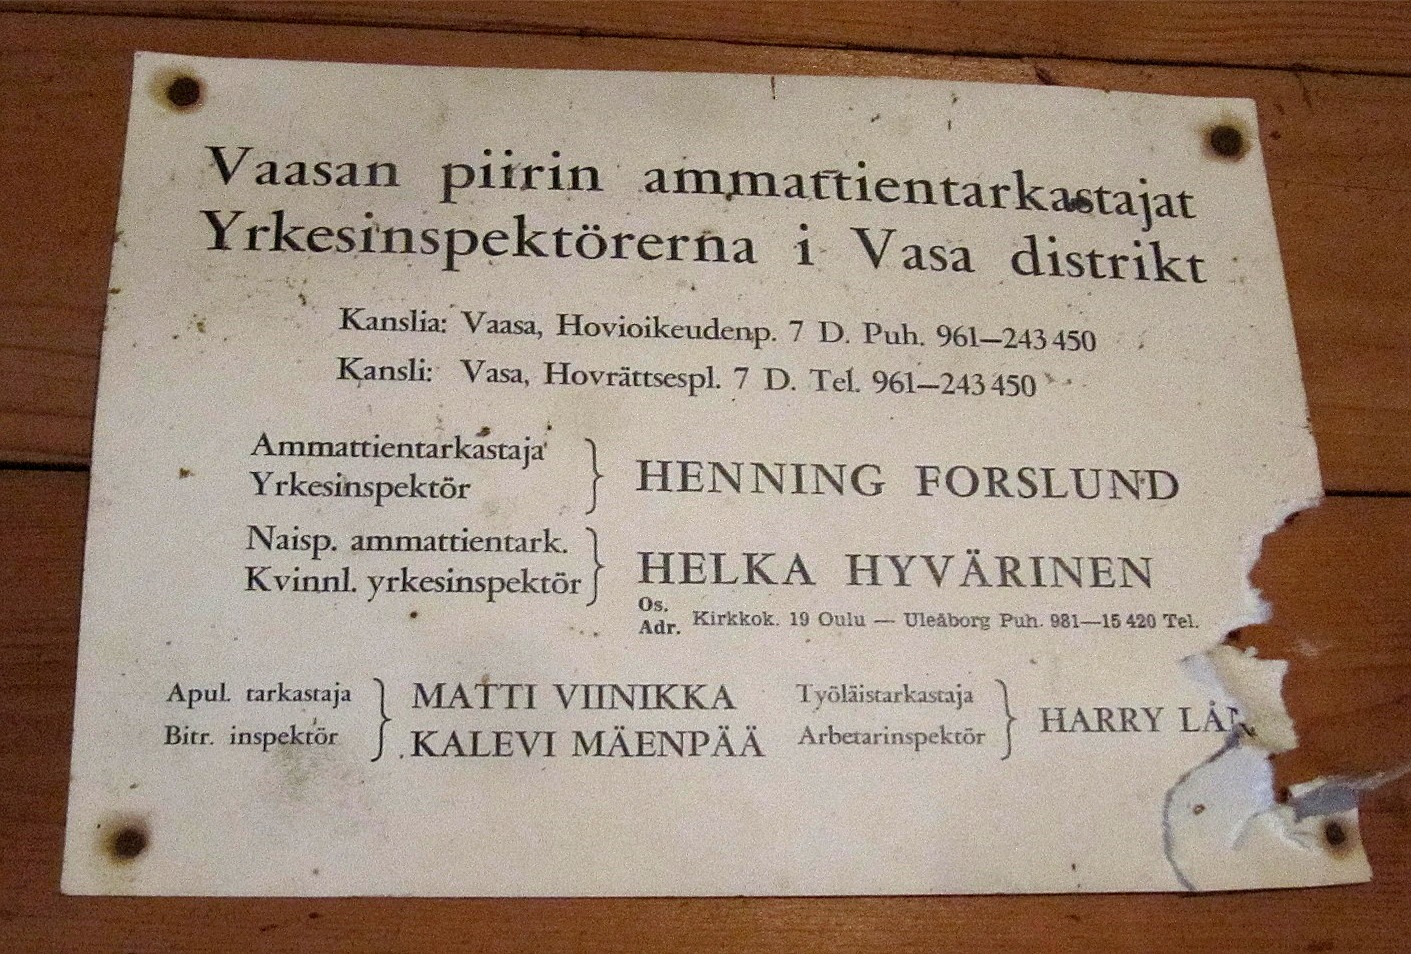 Som sig bör finns det i kafferummet en förteckning på de yrkesinspektörer som finns i Vasa distriktet. Vid behov är det bara att kontakta till exempel Helka Hyvärinen på Kyrkogatan 19 i Uleåborg.